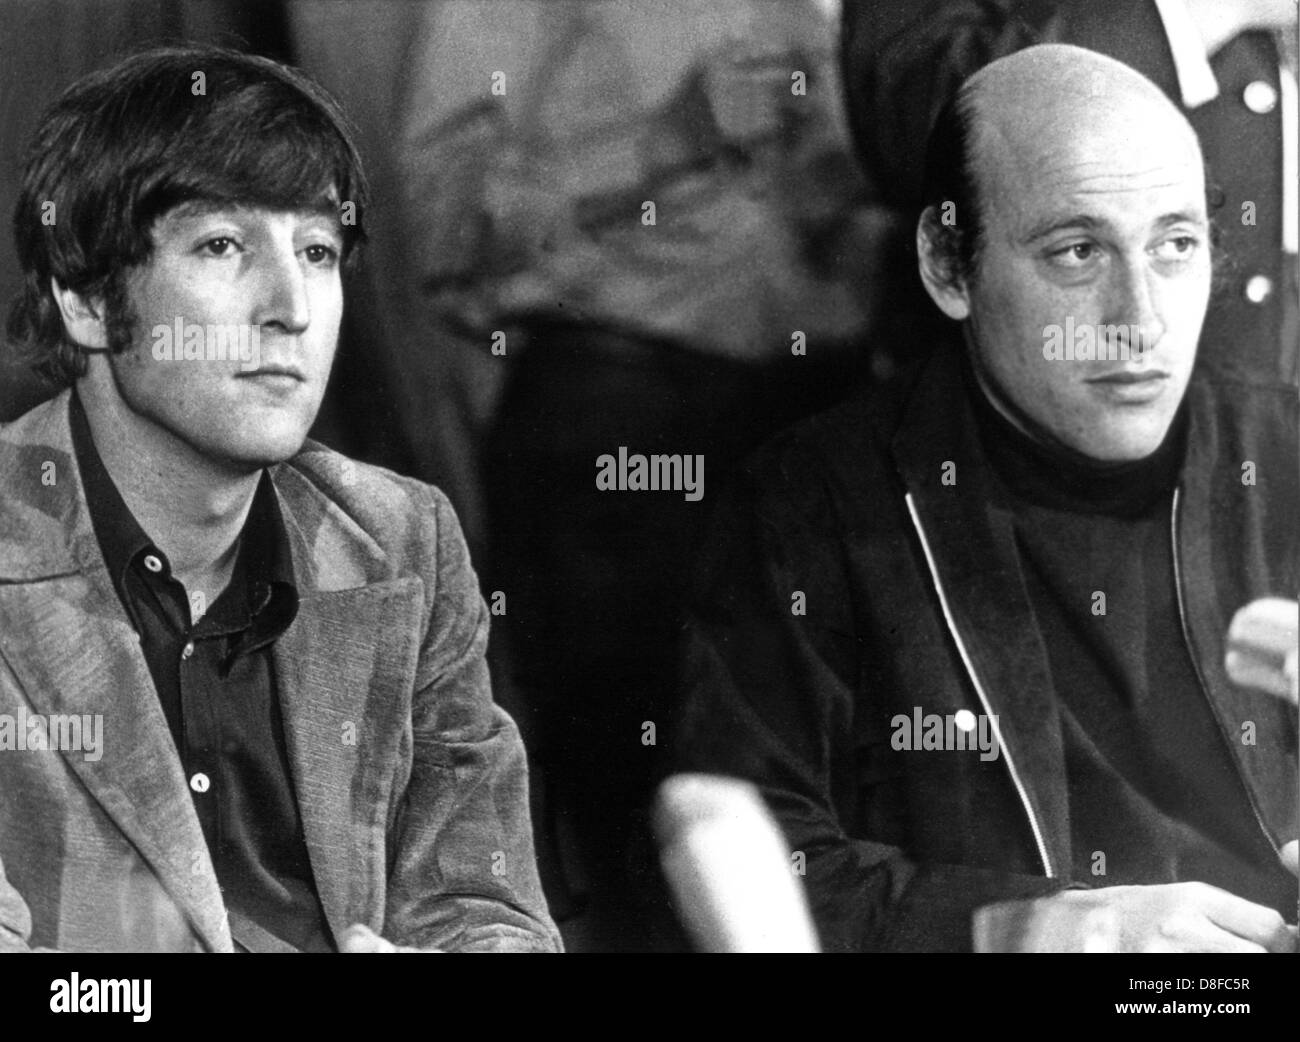 Regista americano Richard Lester (r) e il suo attore John Lennon (l), noto come uno dei quattro Beatles, nel settembre 1966, durante una conferenza stampa tenutasi ad Amburgo. John Lennon agisce in Lester del nuovo film "Come ho vinto la guerra". Foto Stock